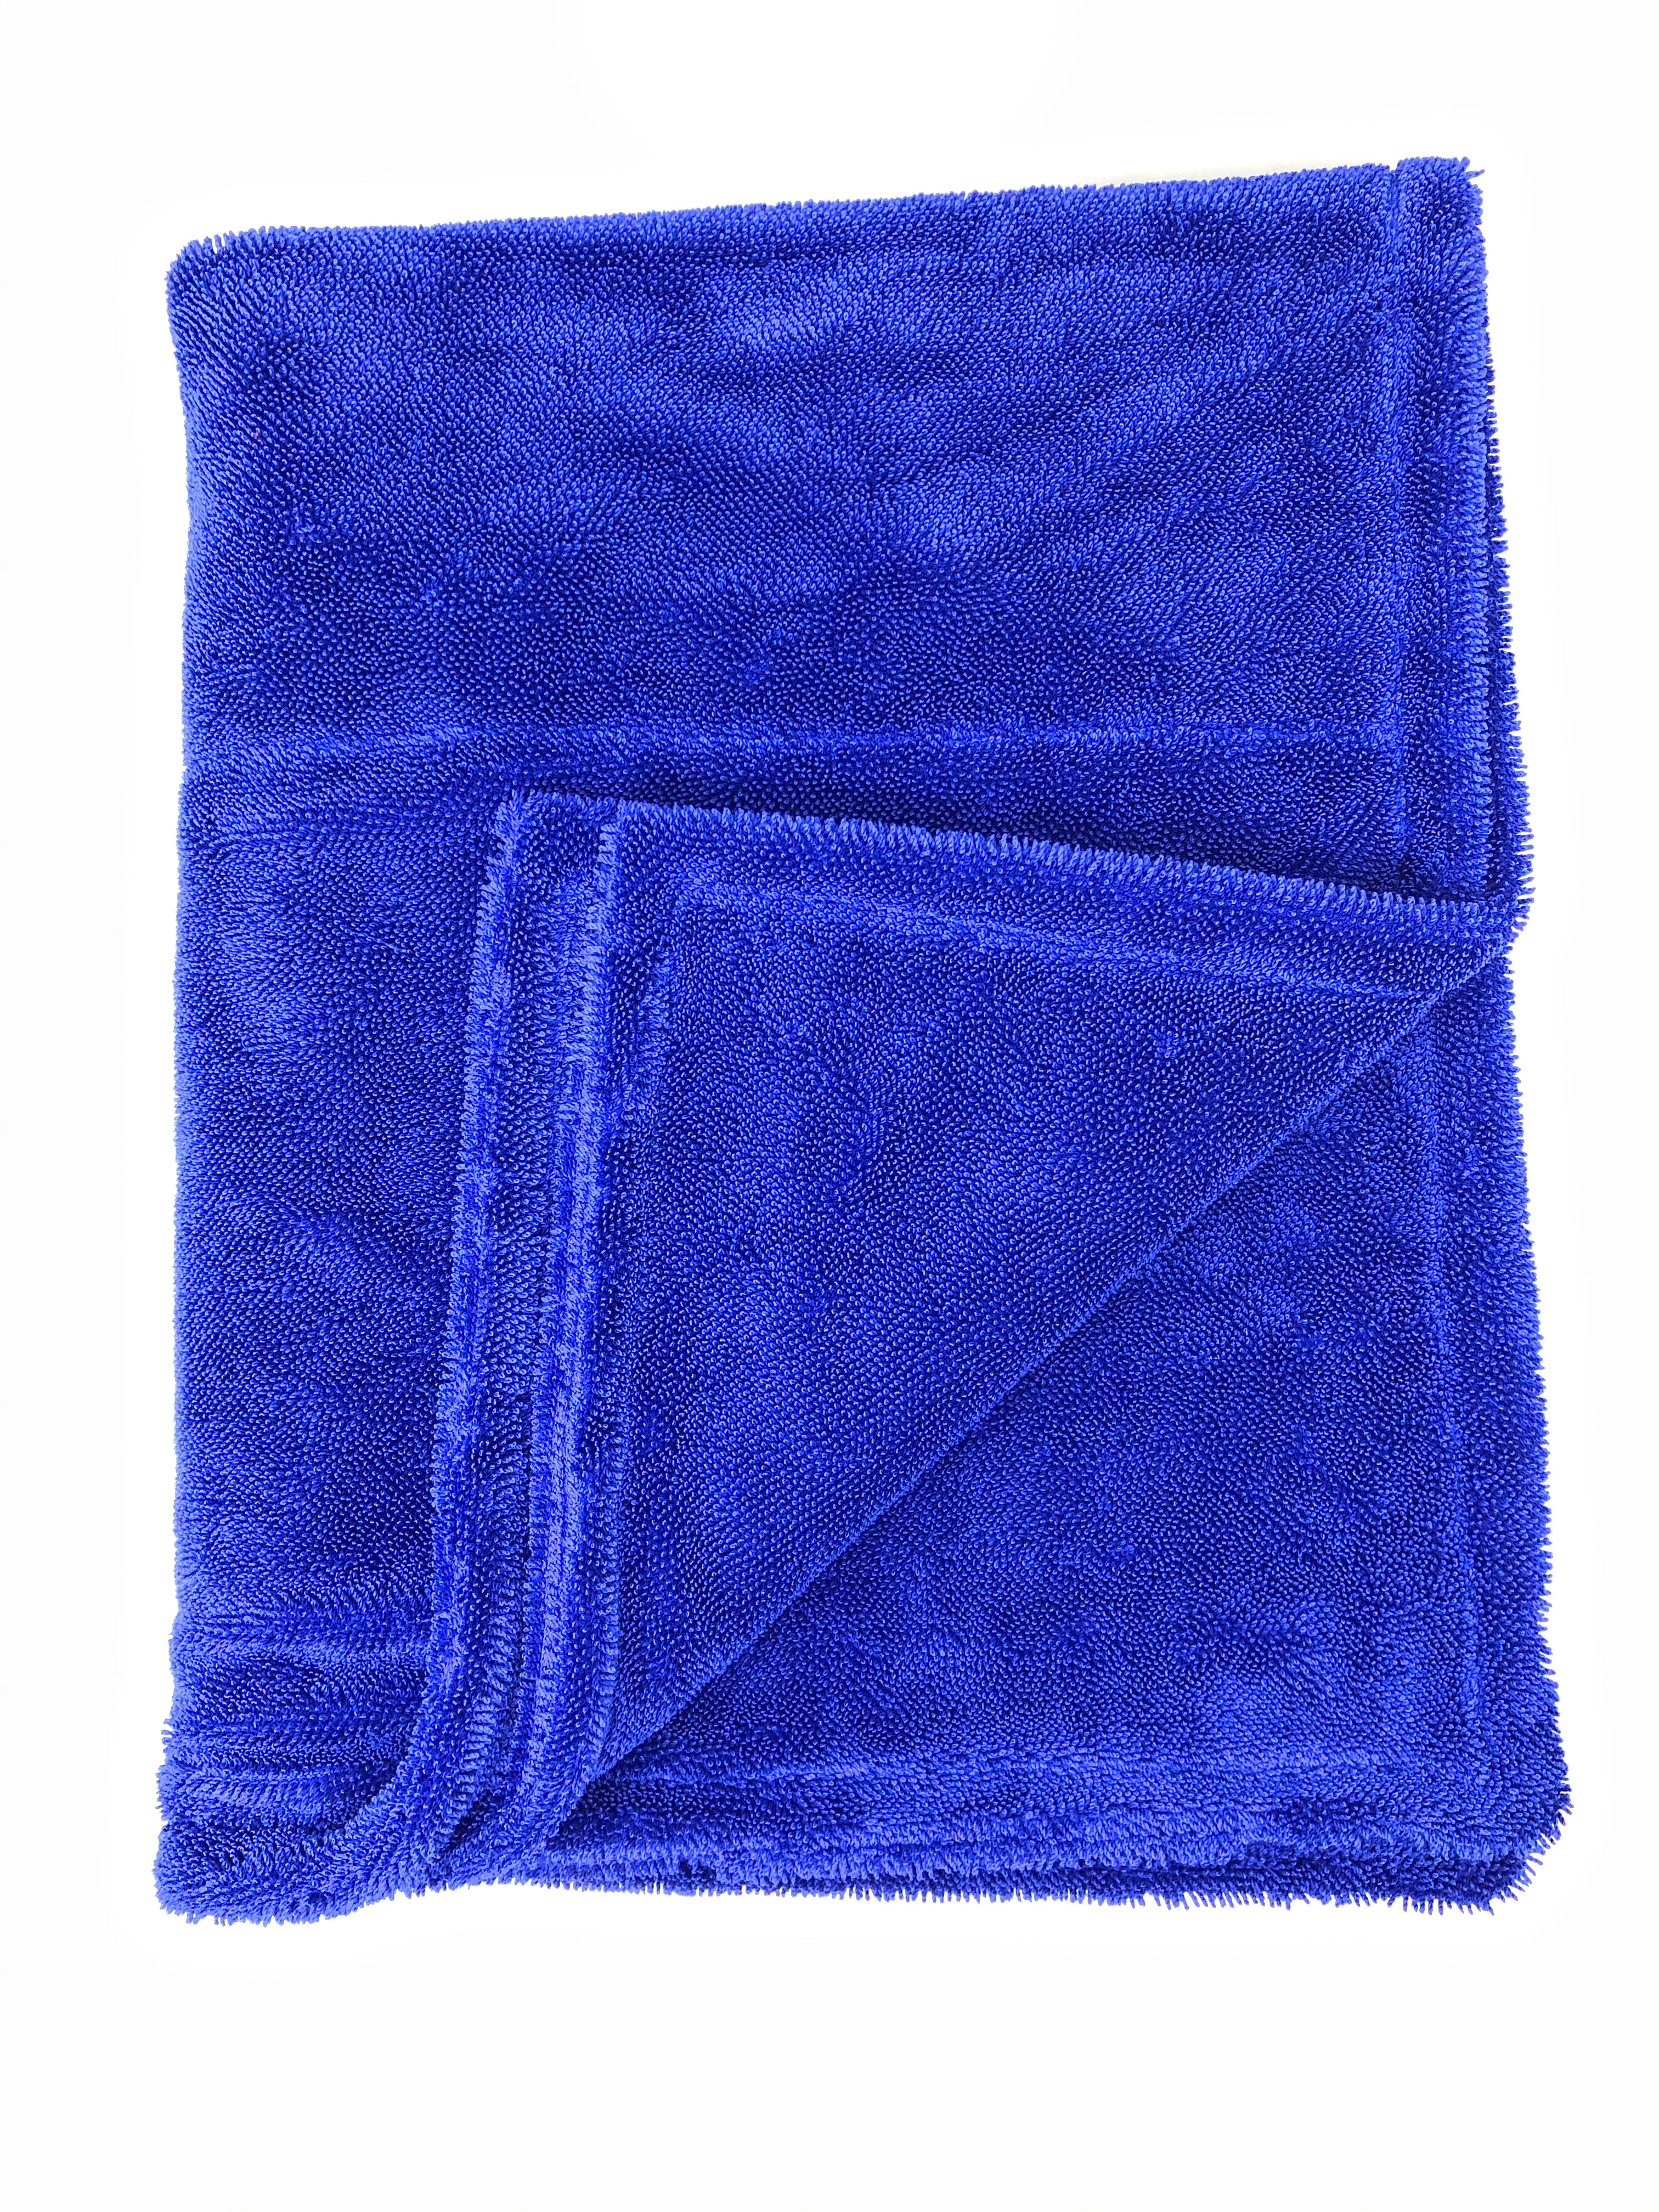 DETAIL ARENA - 1200 Twist Loop Drying Towel